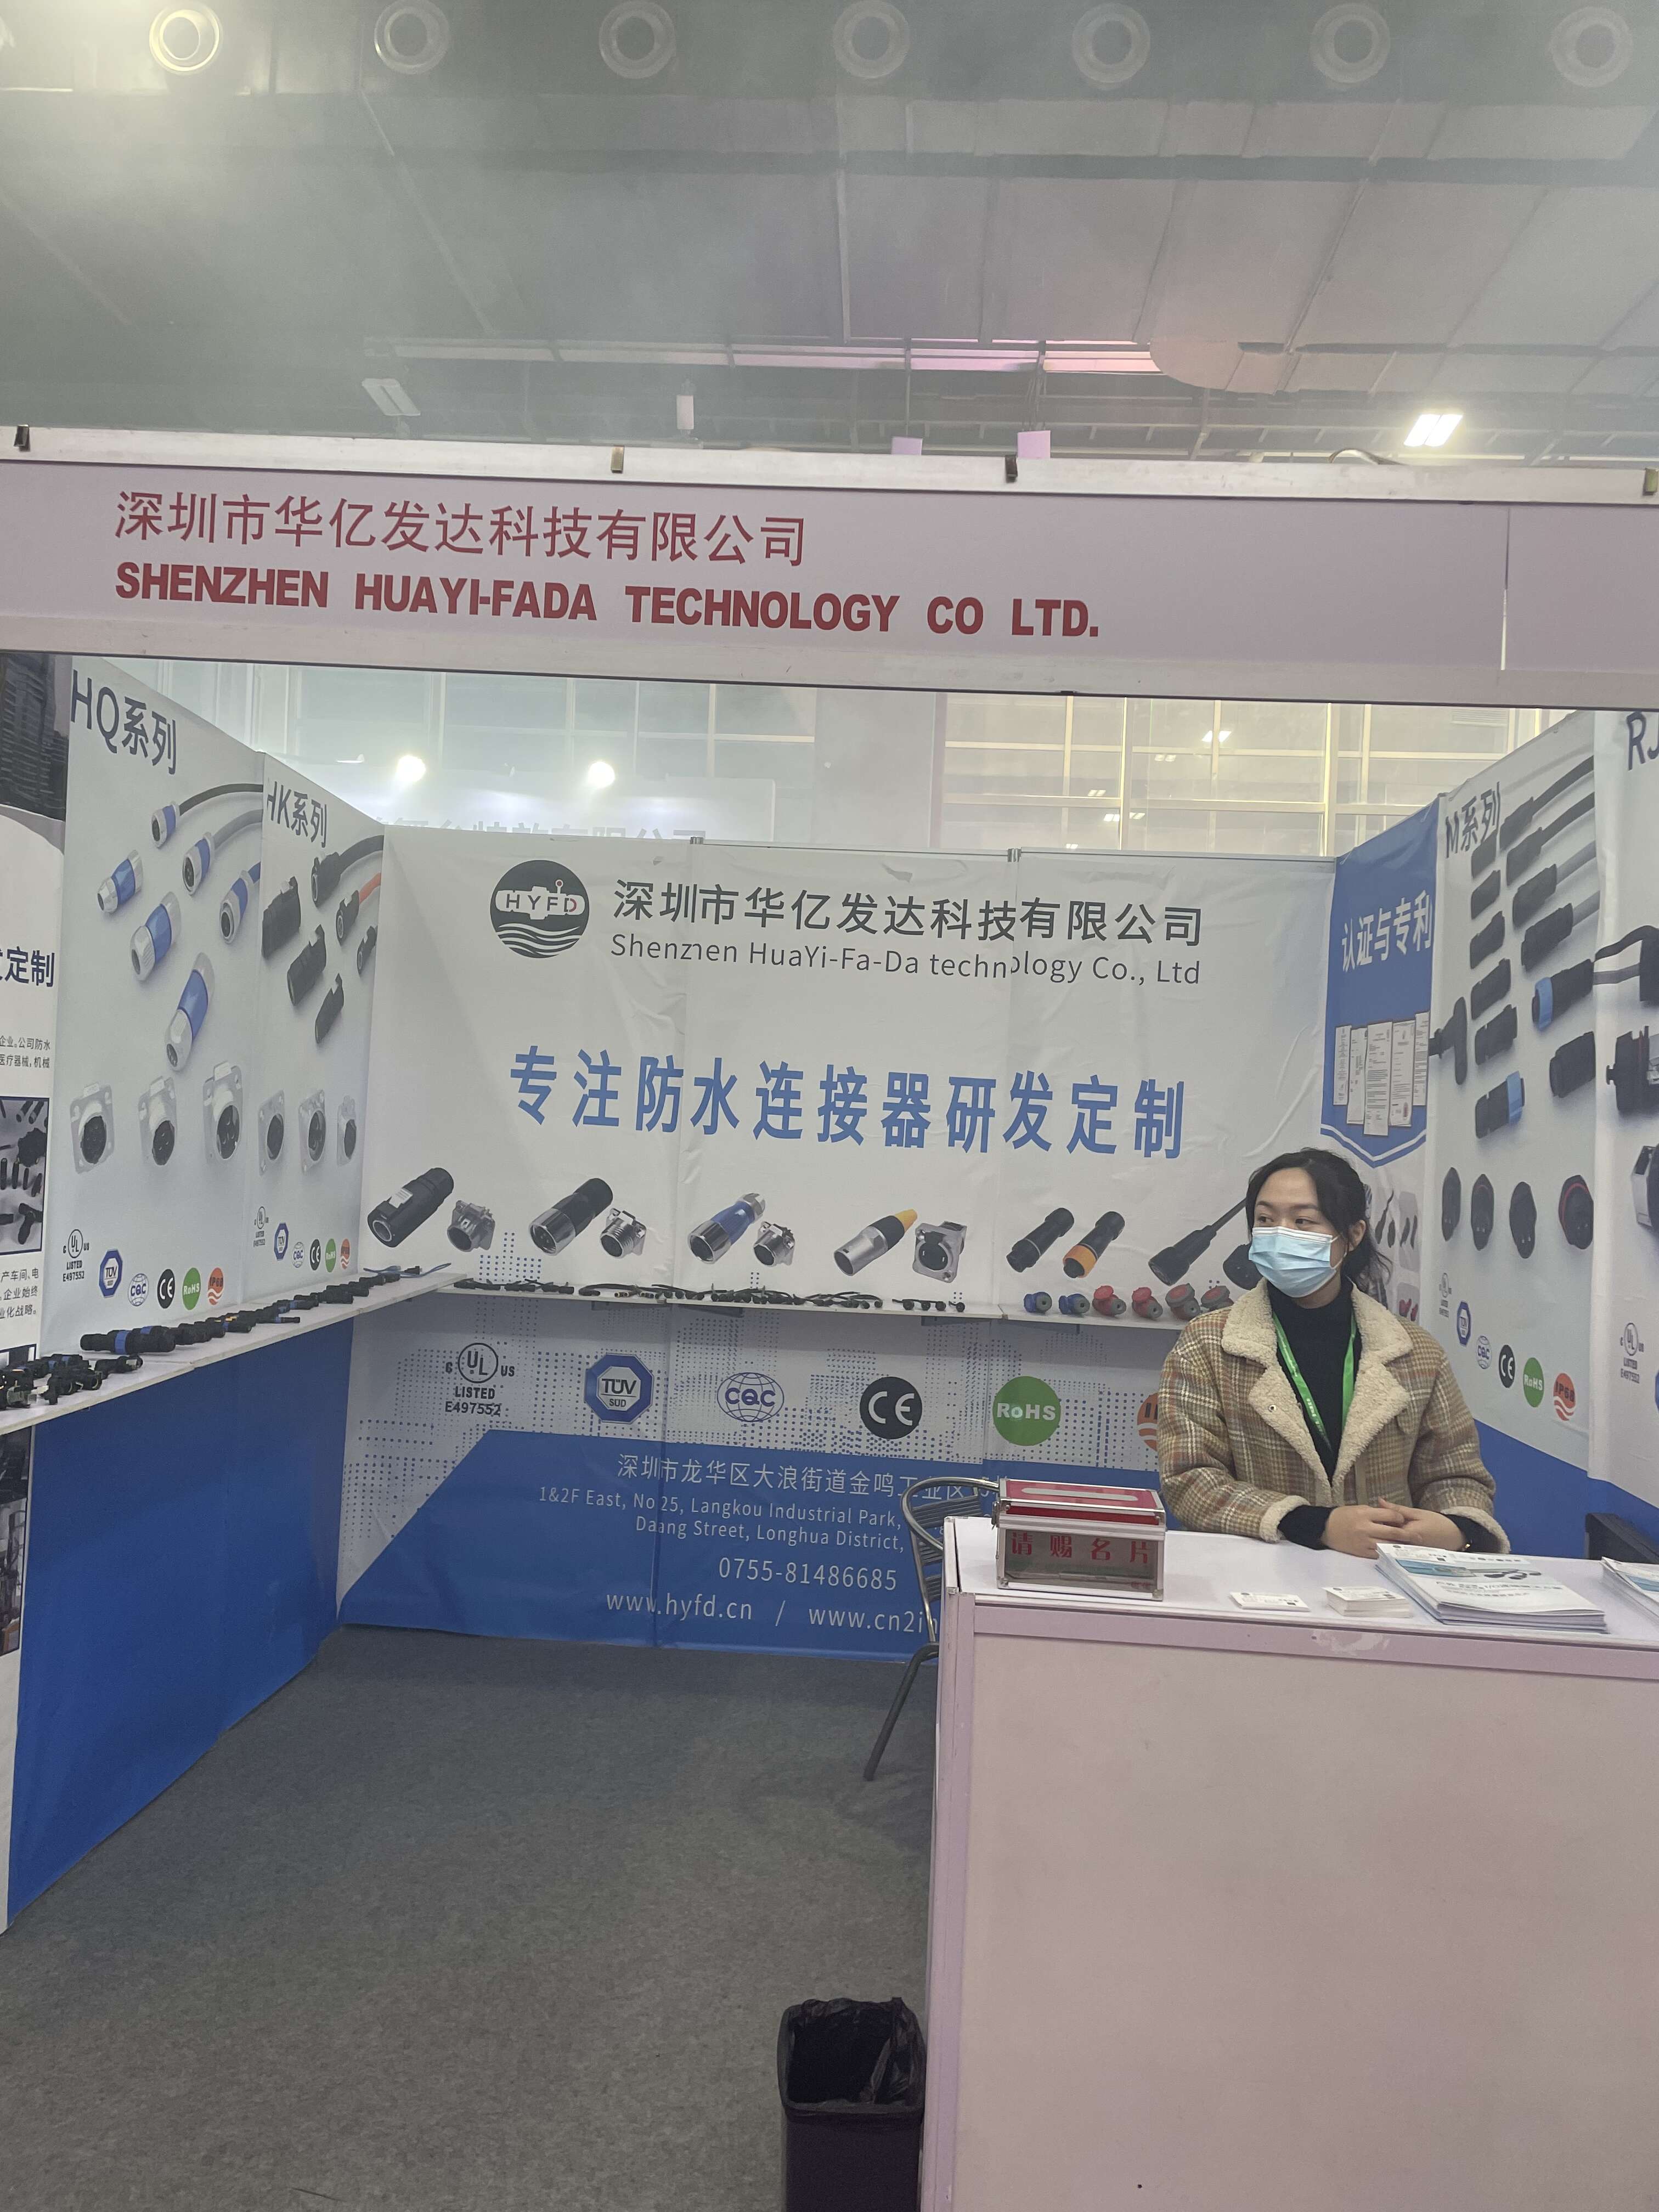 ShenZhen HuaYi-FaDa Technology CO., Ltd